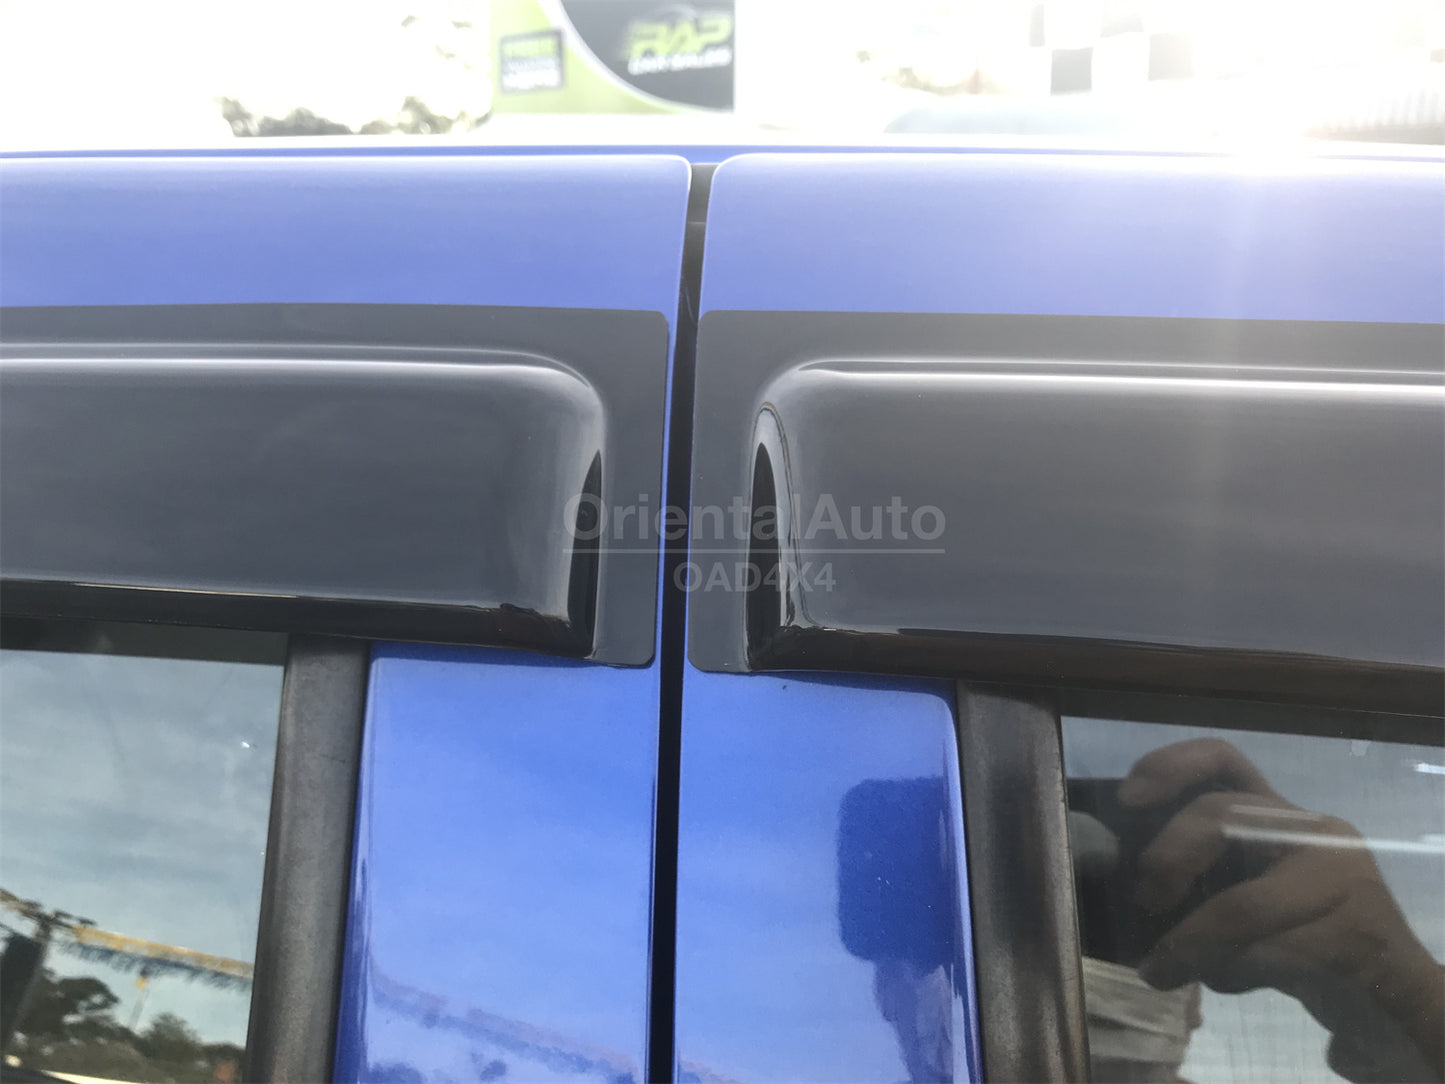 Luxury Weathershields Weather Shields Window Visor For ISUZU D-MAX DMAX Dual Cab 2008-2012